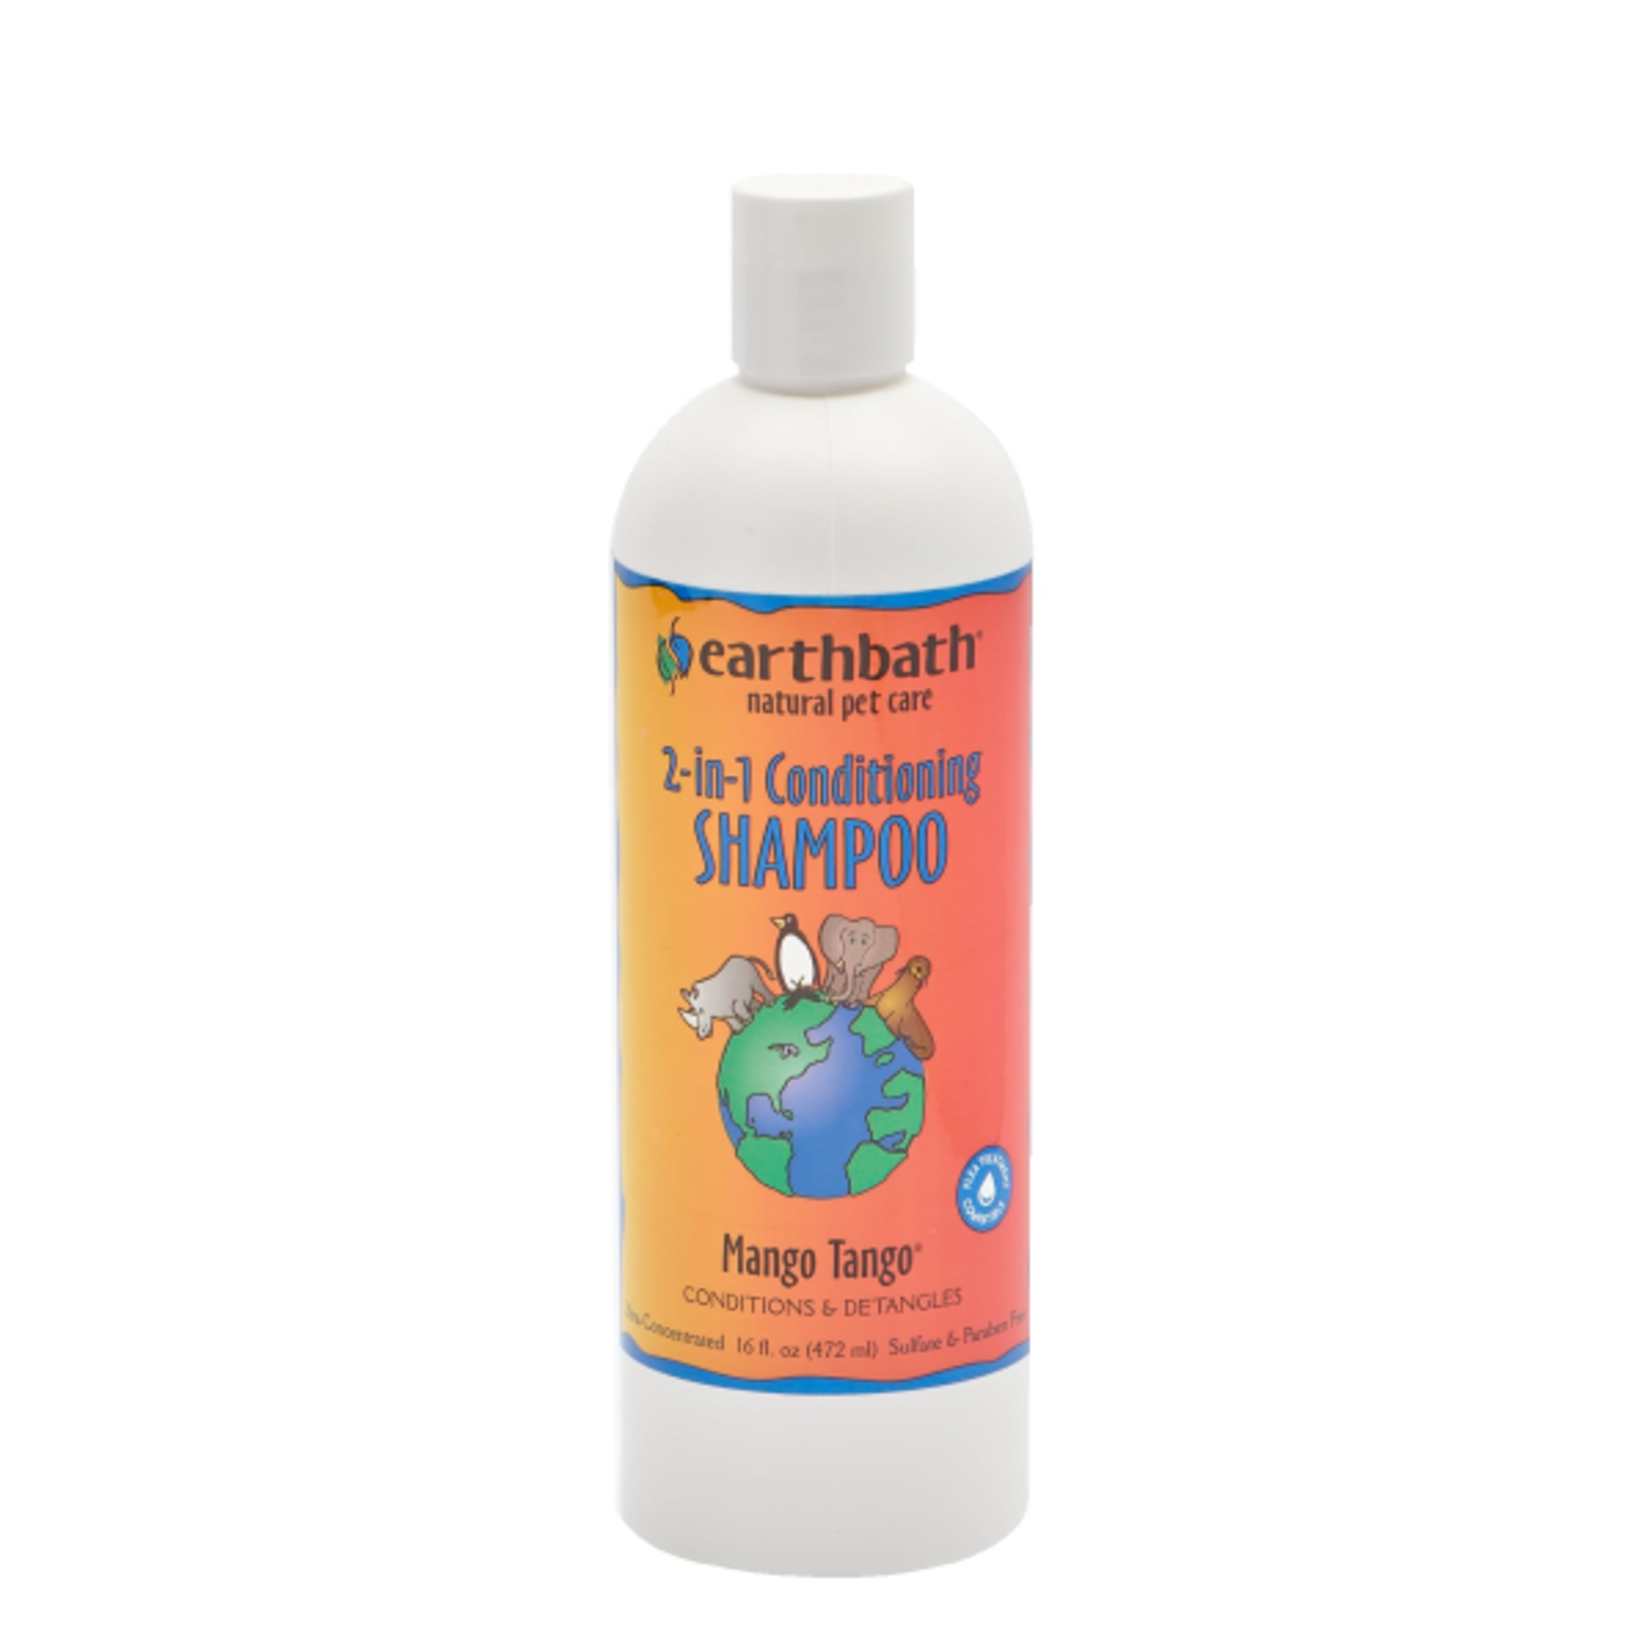 EARTH BATH earthbath 2-in-1 Conditioning Shampoo Mango Tango 16 oz